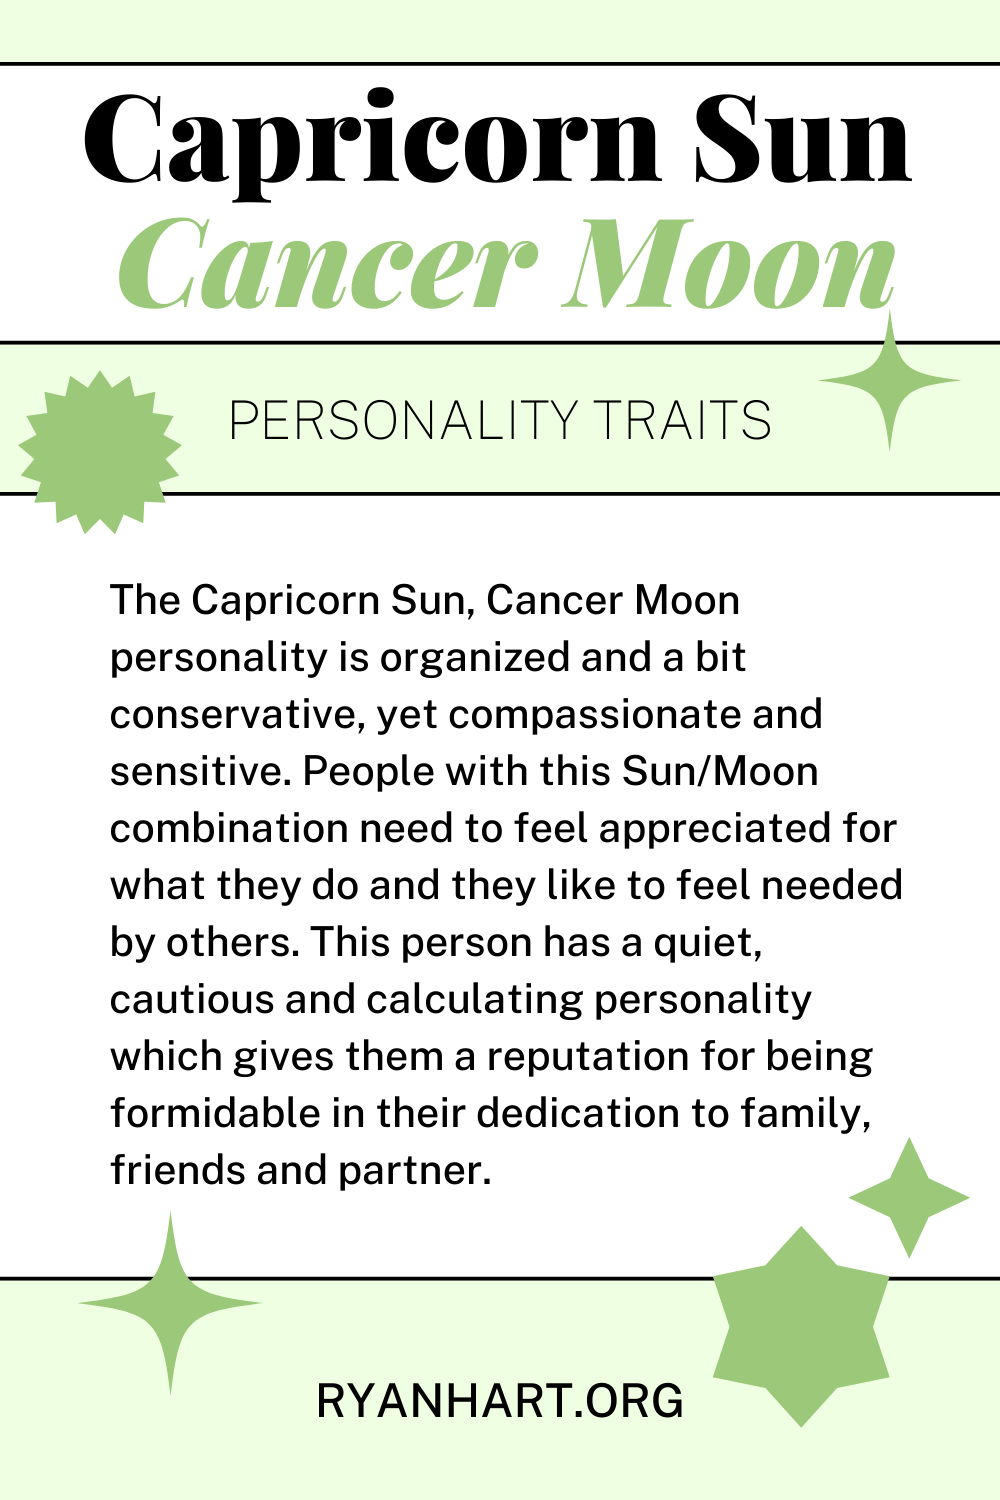  Χαρακτηριστικά προσωπικότητας Αιγόκερω Ήλιος Καρκίνος Σελήνη